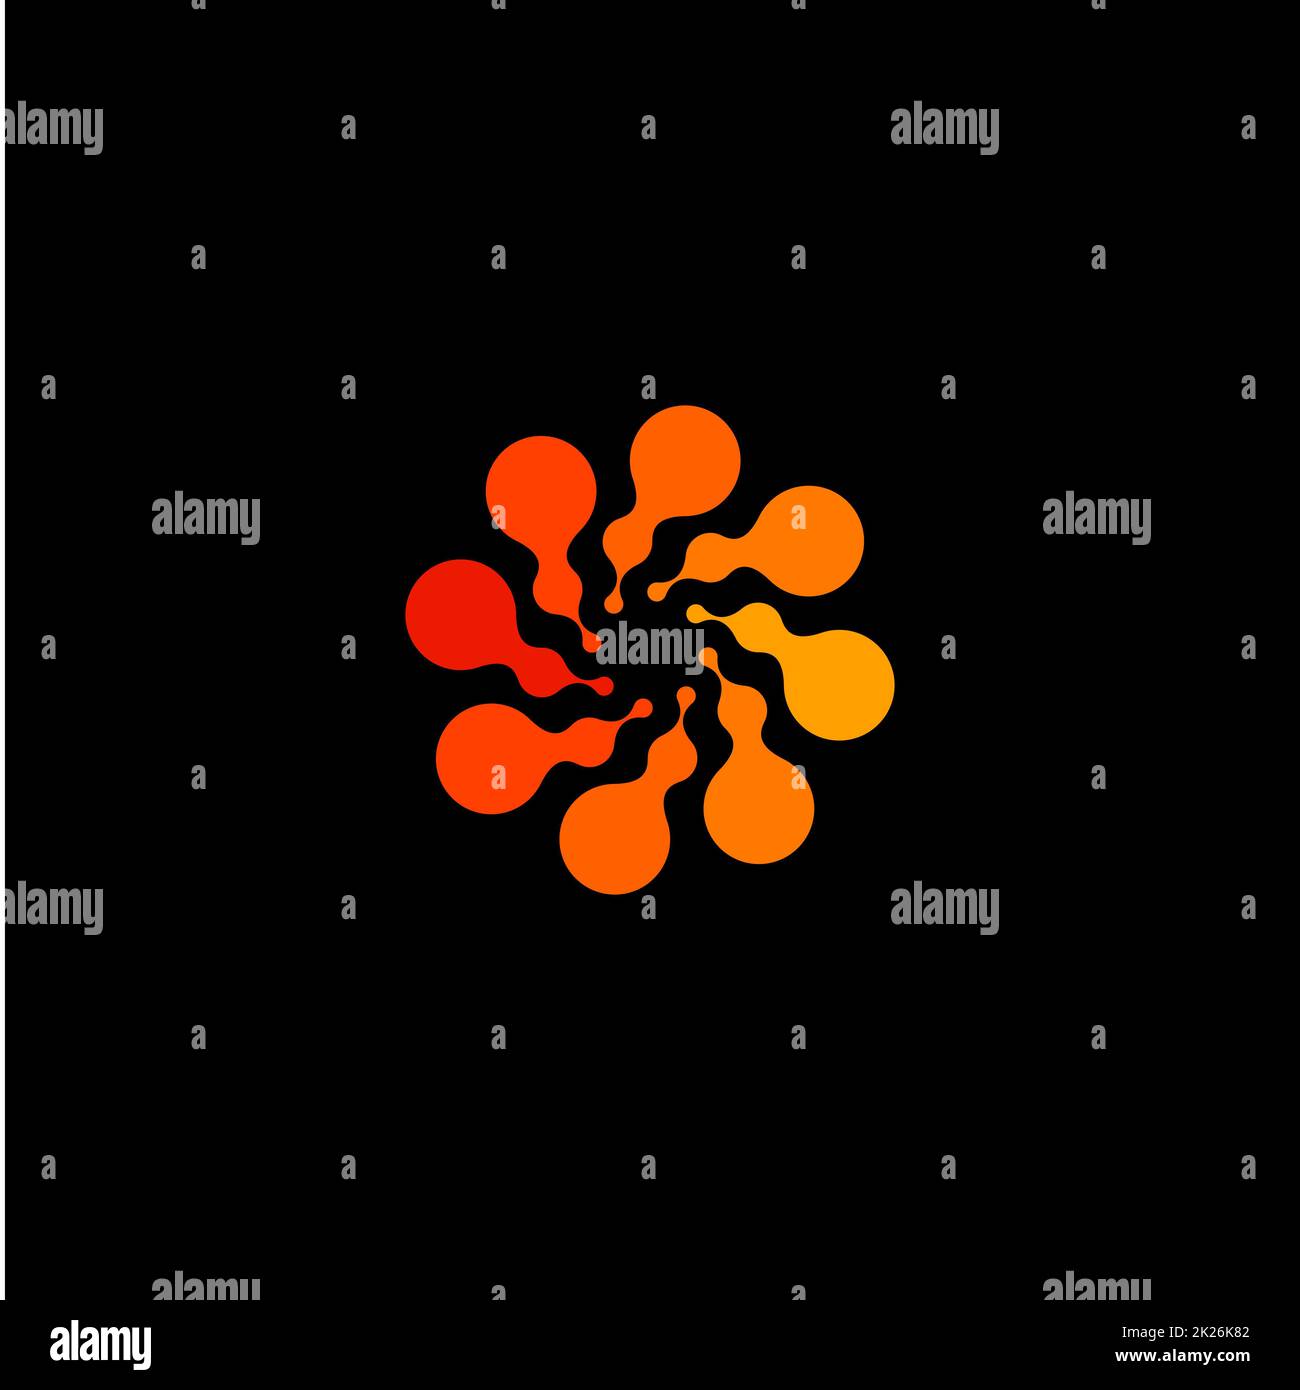 Isoliertes, abstraktes, rundes, orangefarbenes Logo, gepunktetes, stilisiertes Sonnenlogo auf schwarzem Hintergrund, wirbelförmige Vektordarstellung Stockfoto